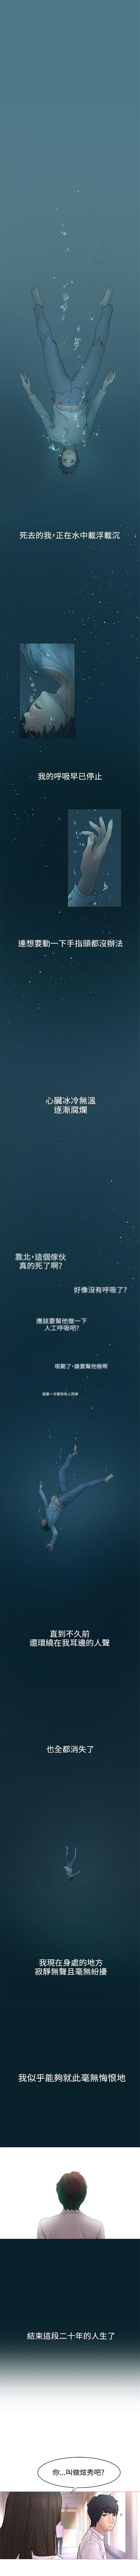 冲突 1-10 中文翻译 （更新中） page 2 full